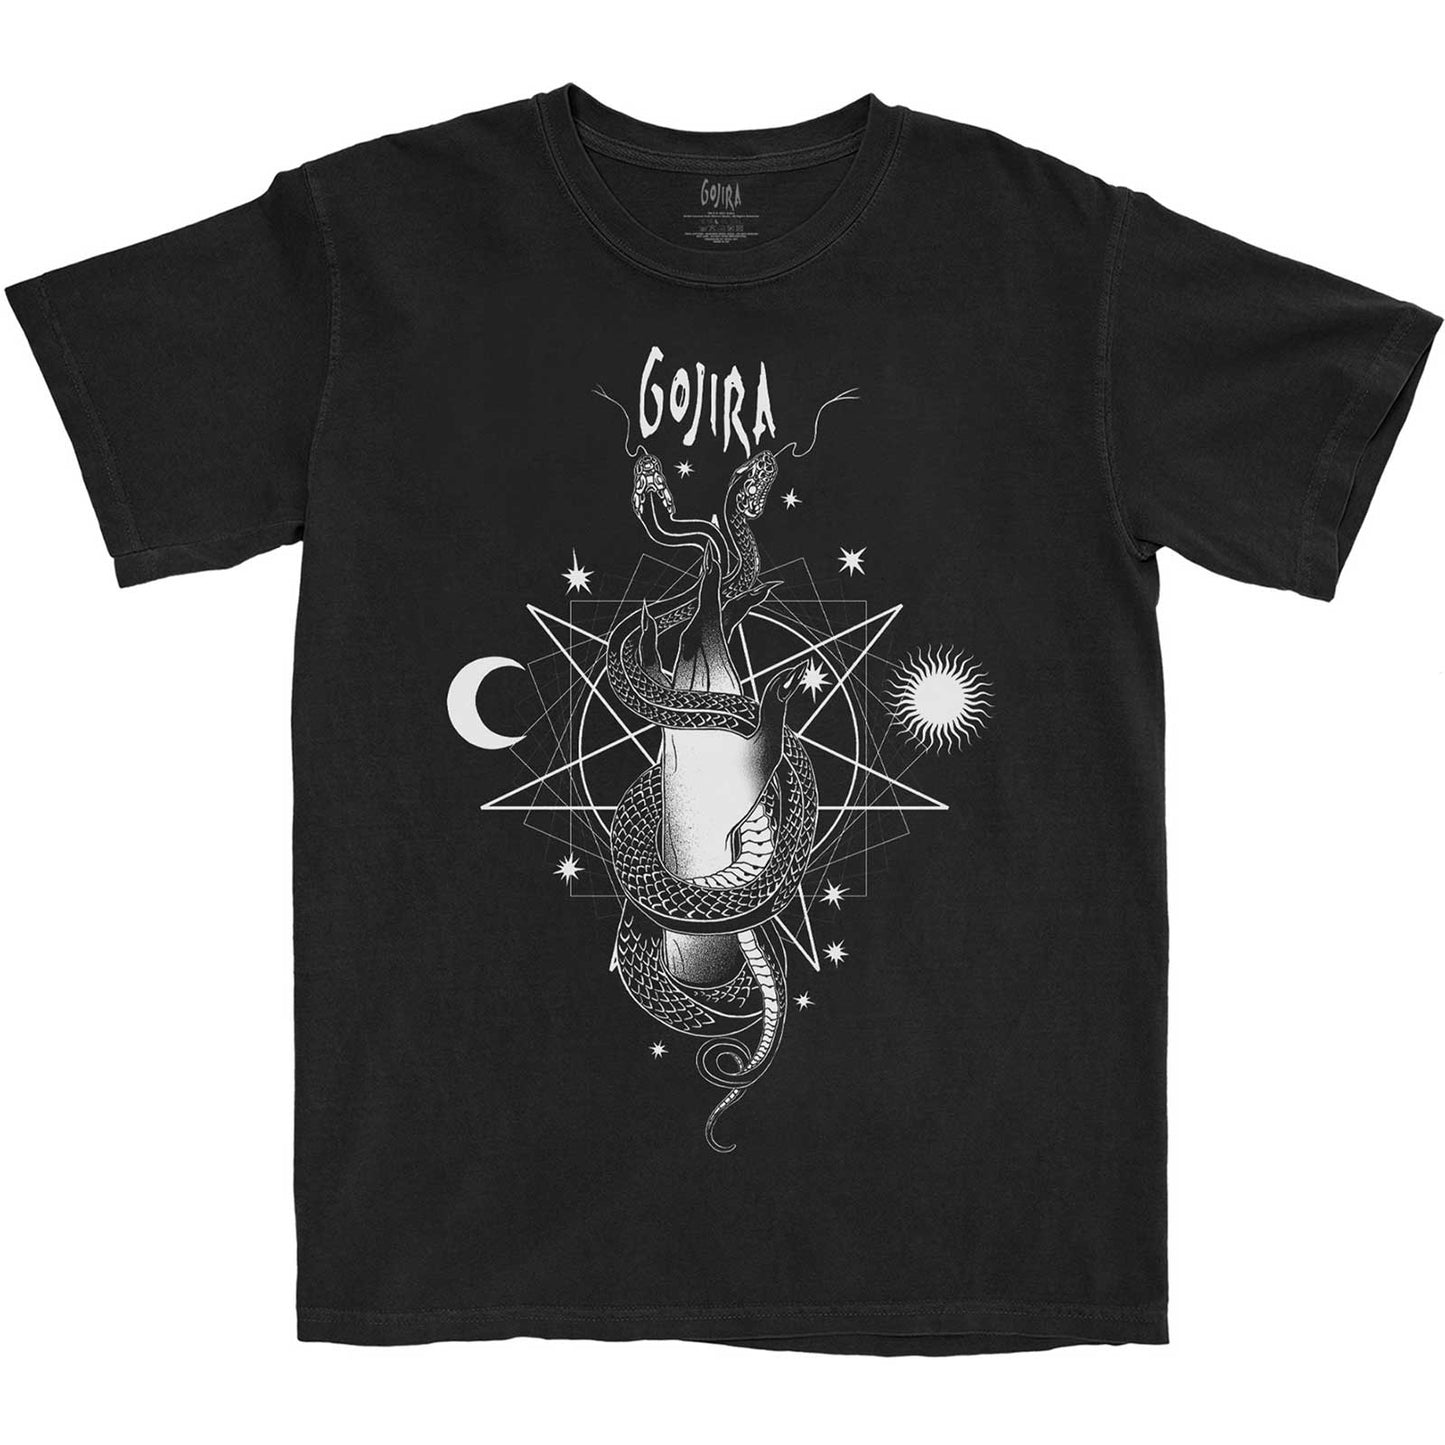 Gojira T-Shirt: Celestial Snakes